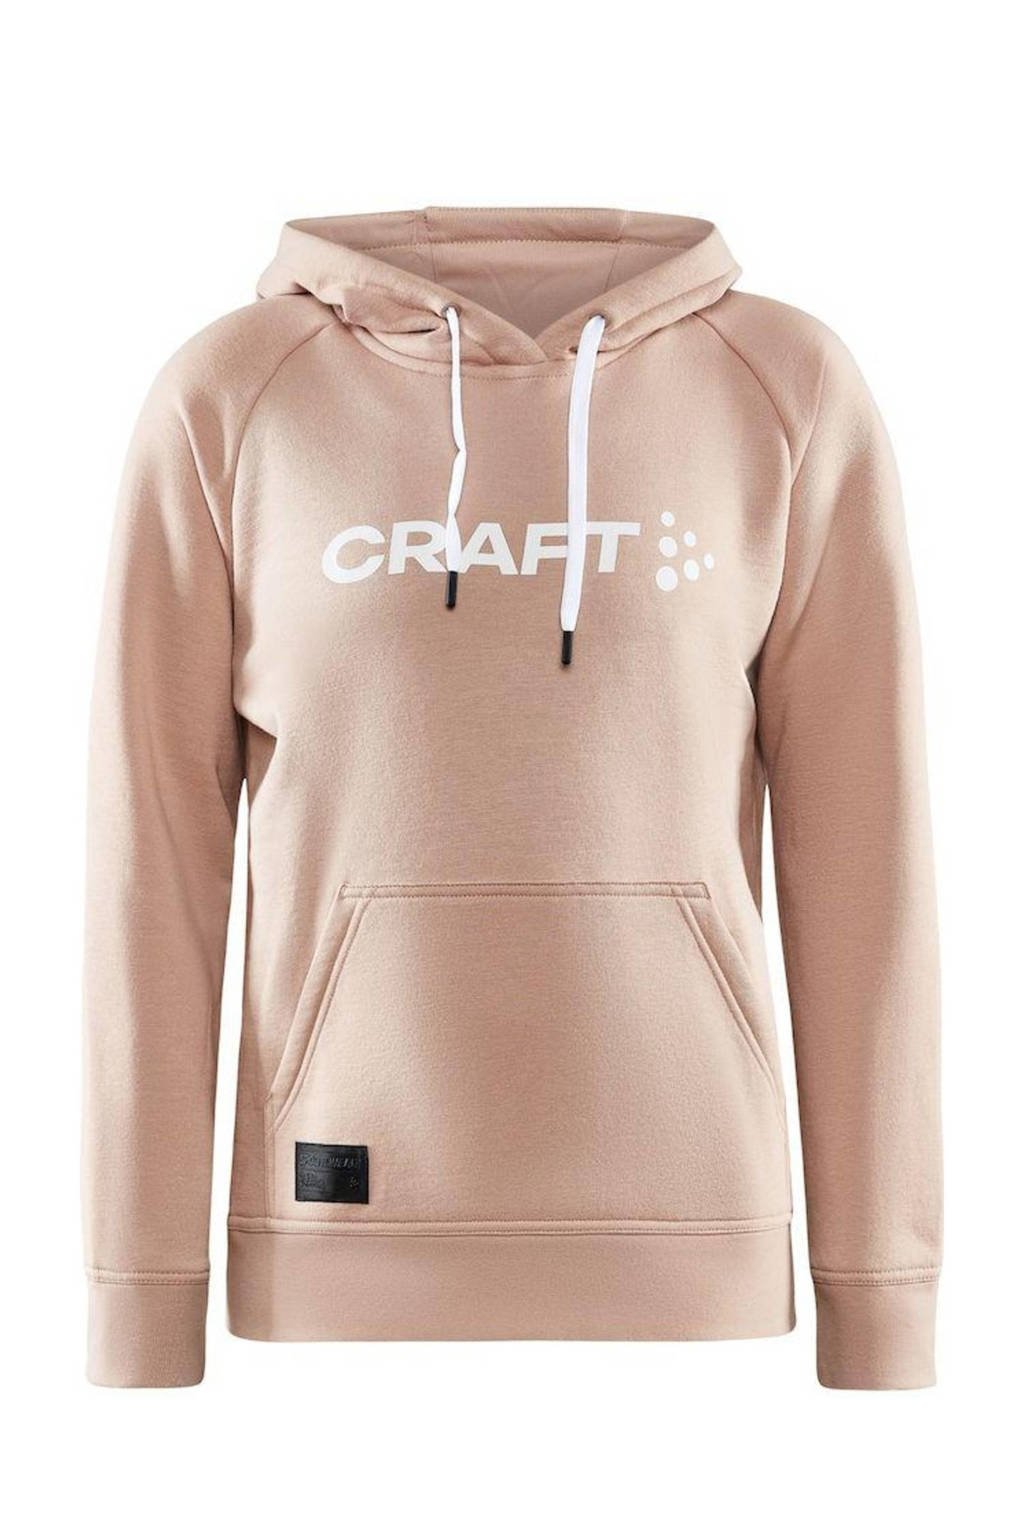 Craft hoodie Core met logo roze, Roze